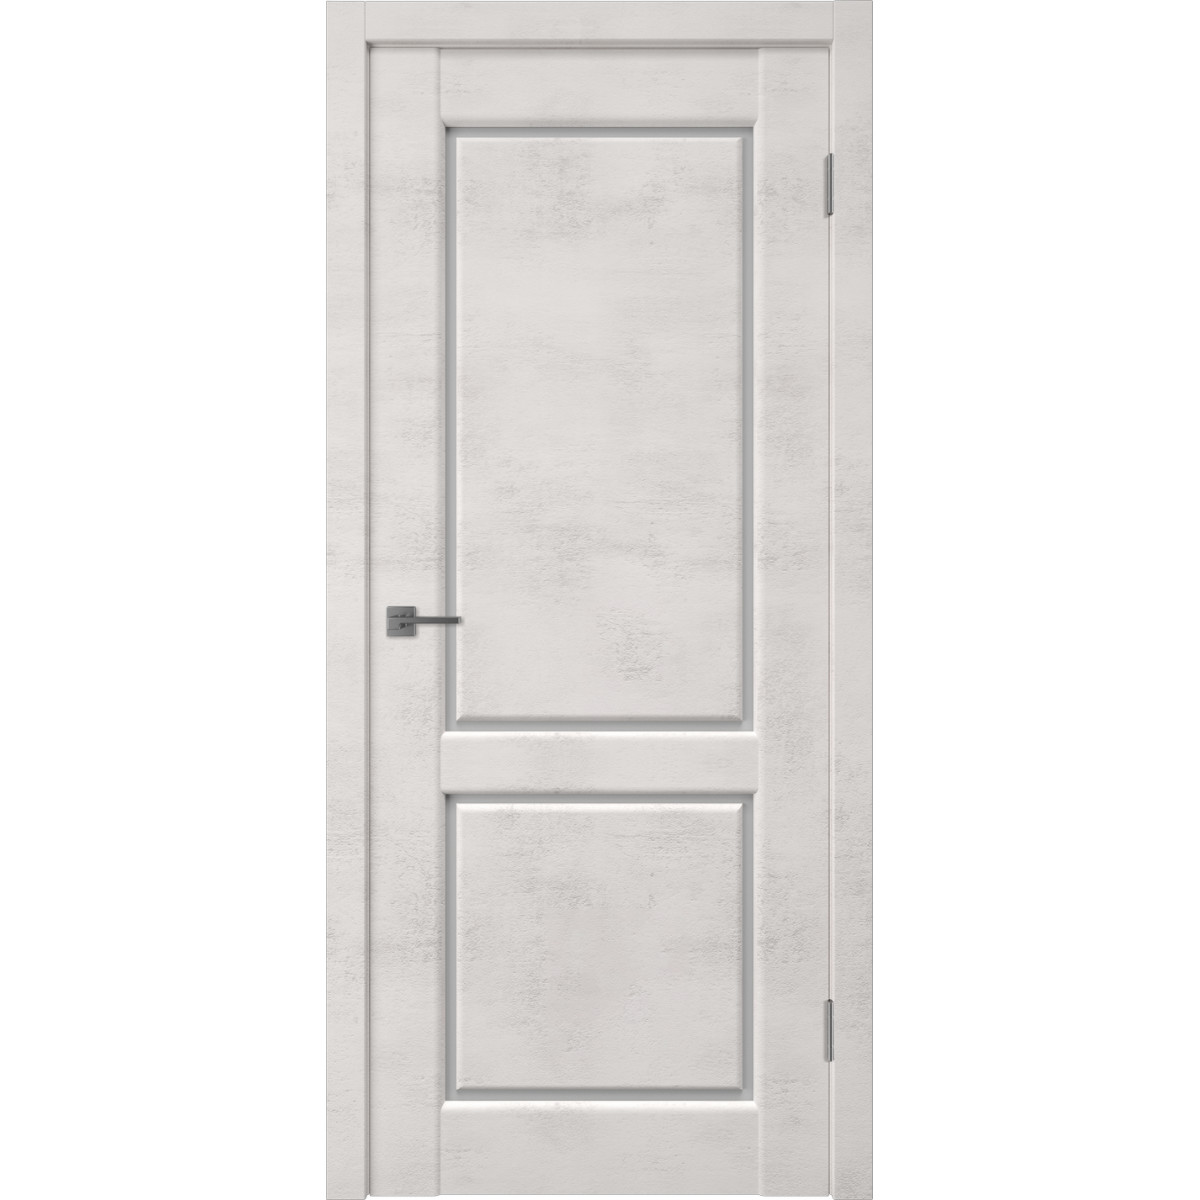 Дверь межкомнатная остеклённая Манхэттен 2 с фурнитурой 80х200 см, ПВХ, цвет лофт крем